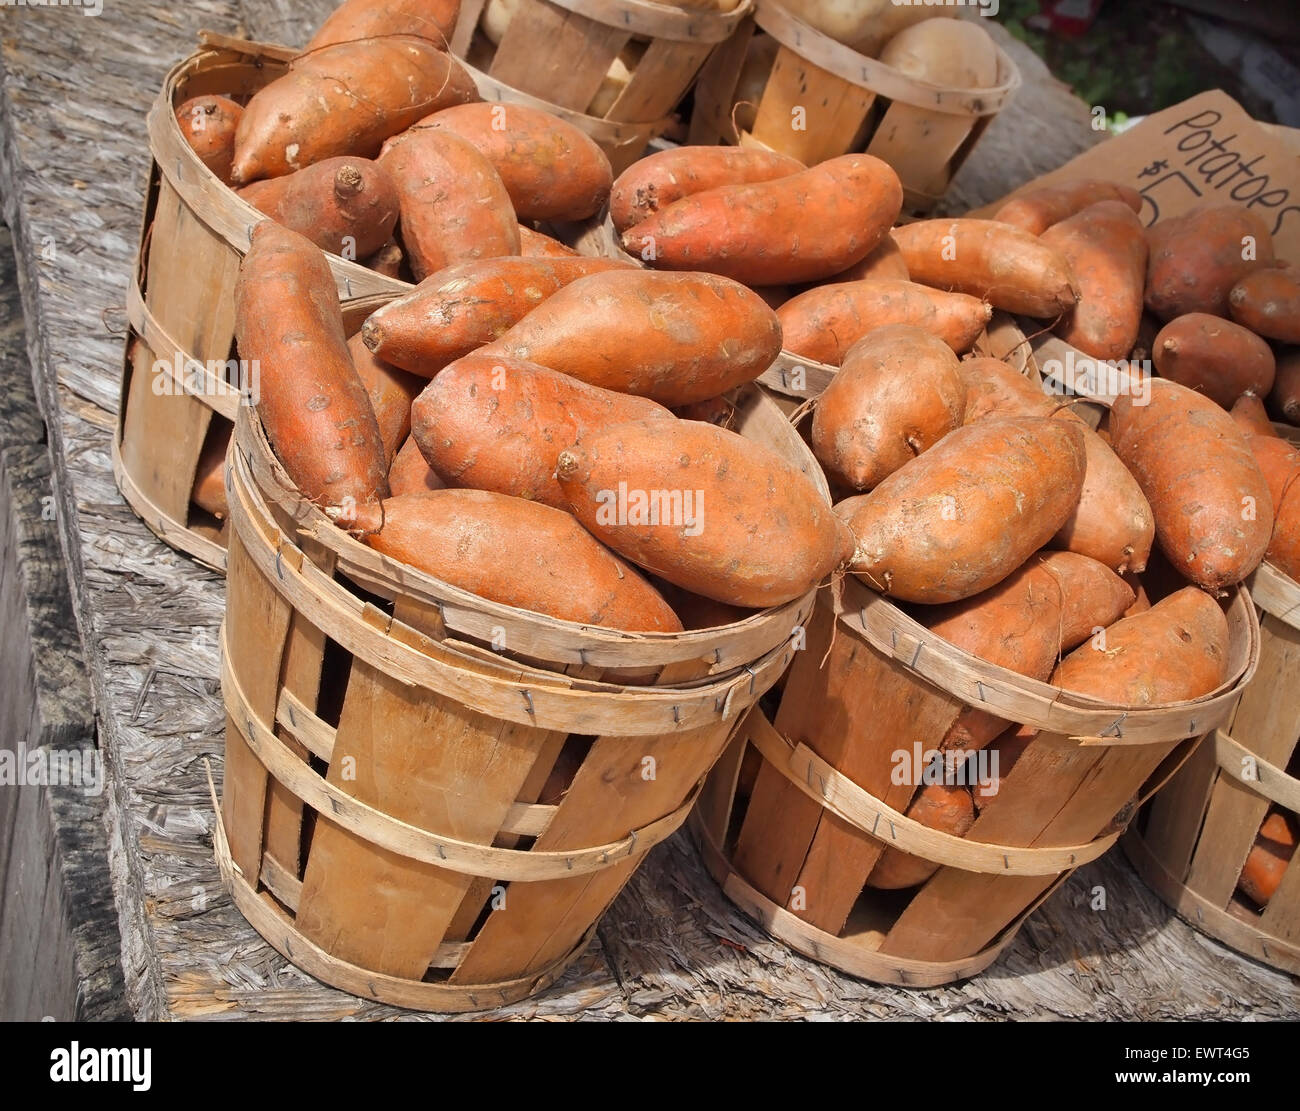 Boisseaux de patates douces de couleur orange vif pour la vente à un marché fermier local. Banque D'Images